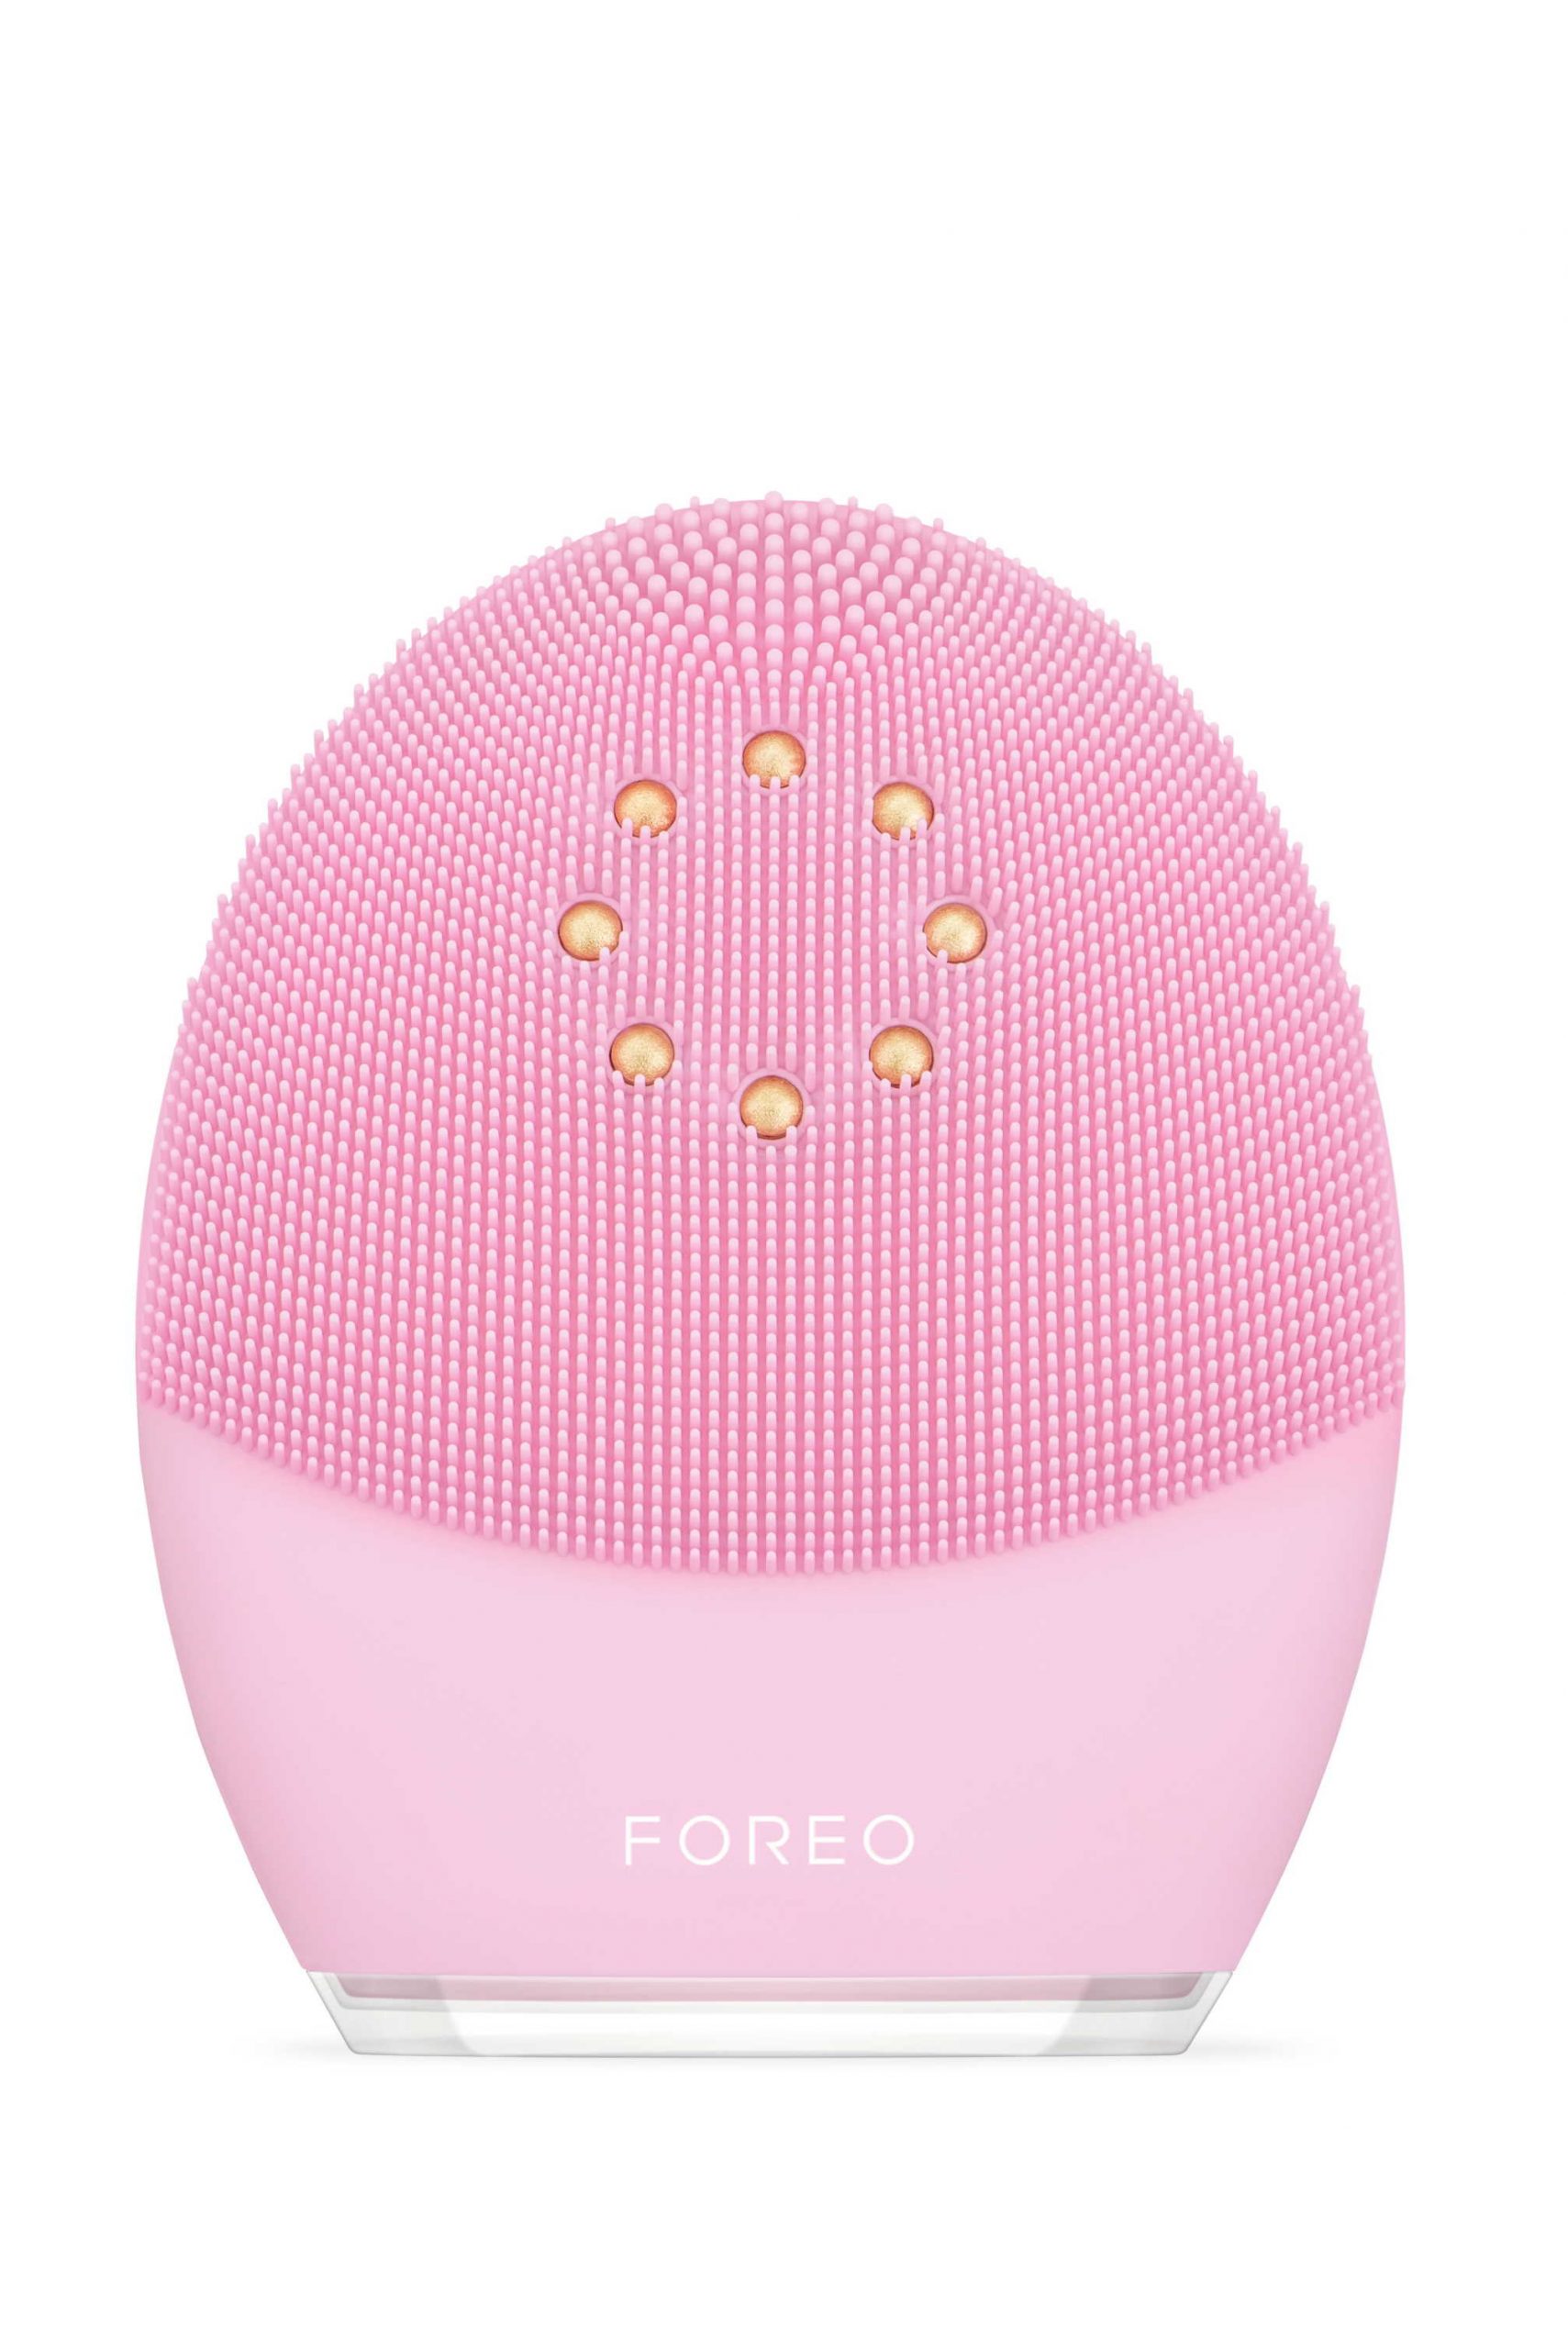 FOREO predstavlja novi Luna 3 plus uređaj za nezaboravnu beauty rutinu i blistavu kožu